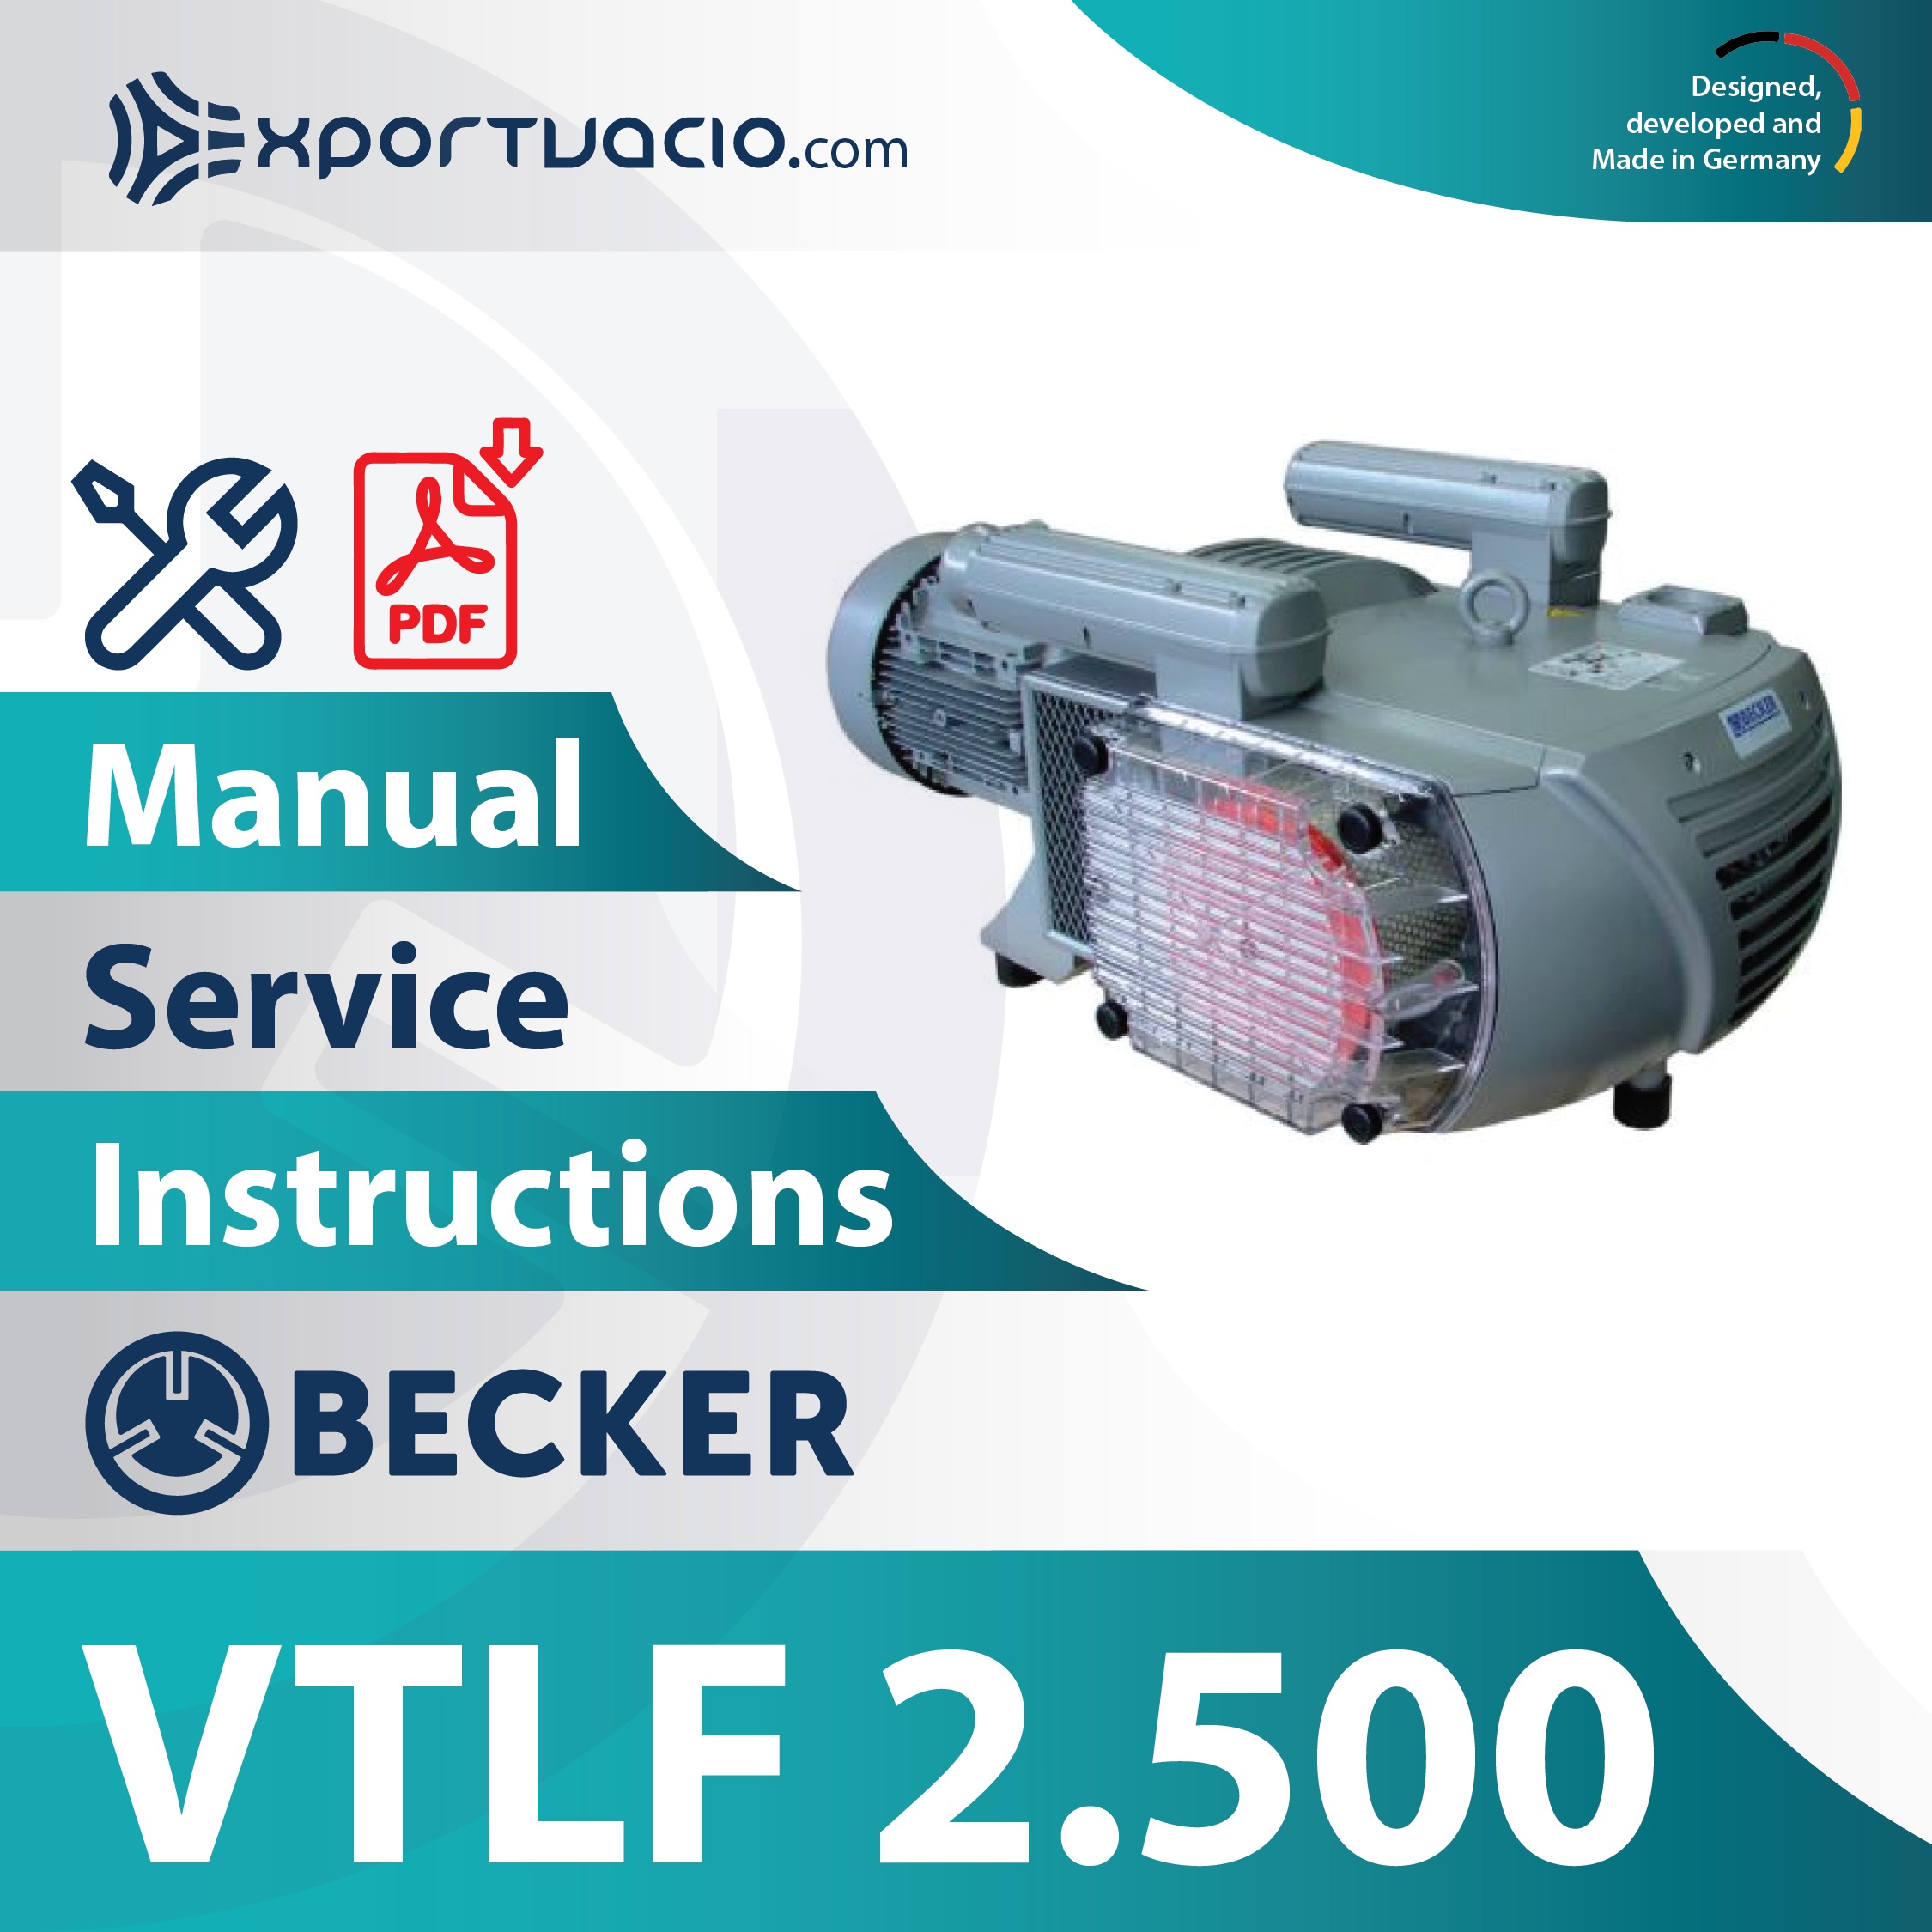 Becker VTLF 2.500